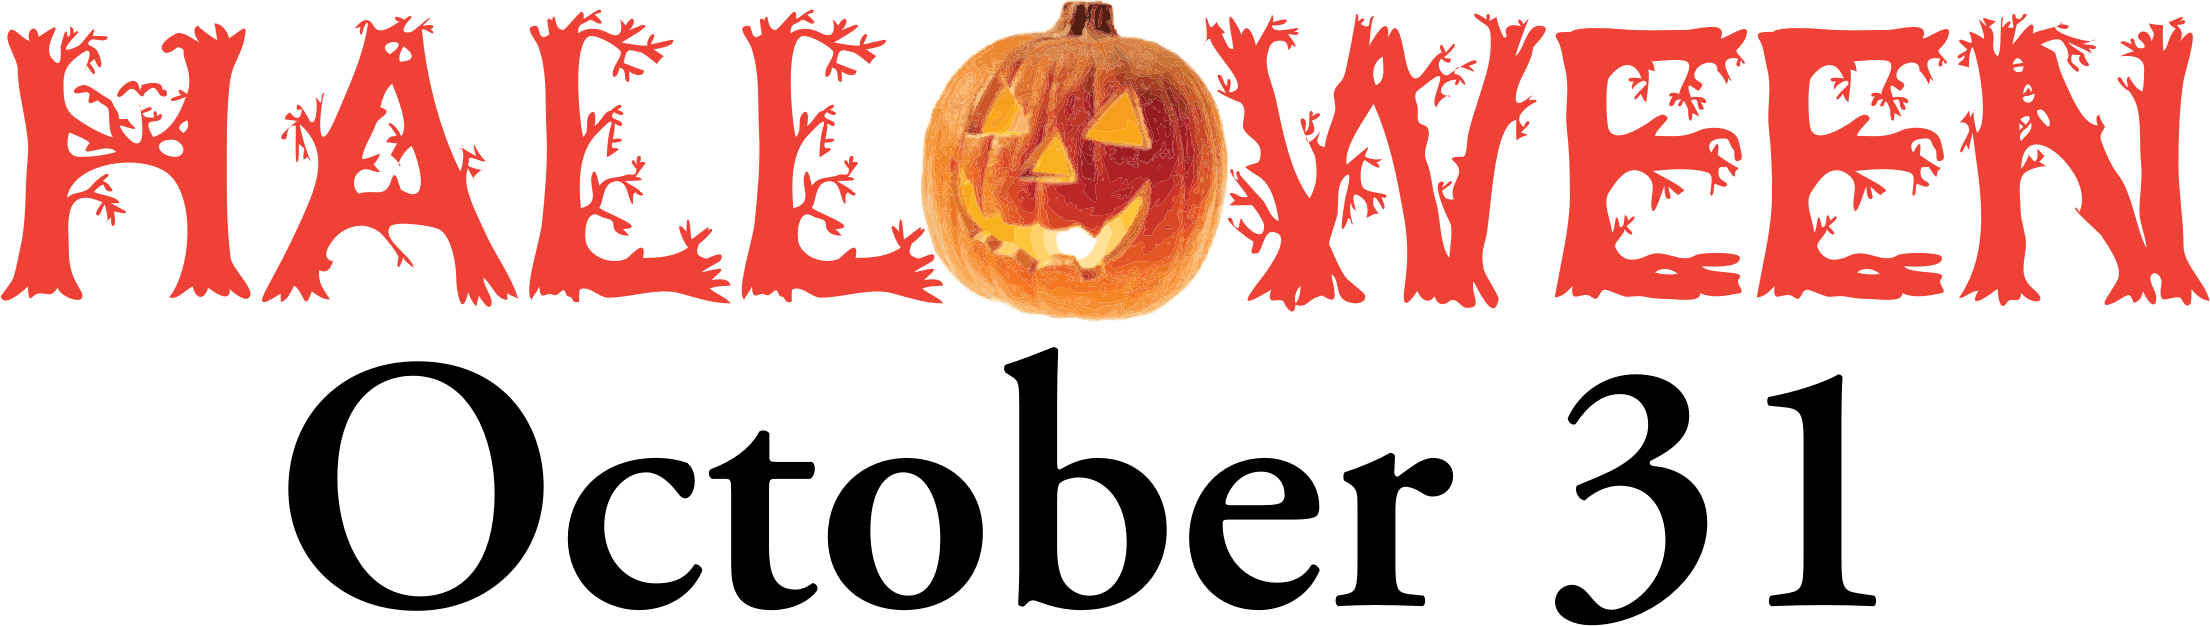 Big Image - Happy Halloween 31 October (2210x626)